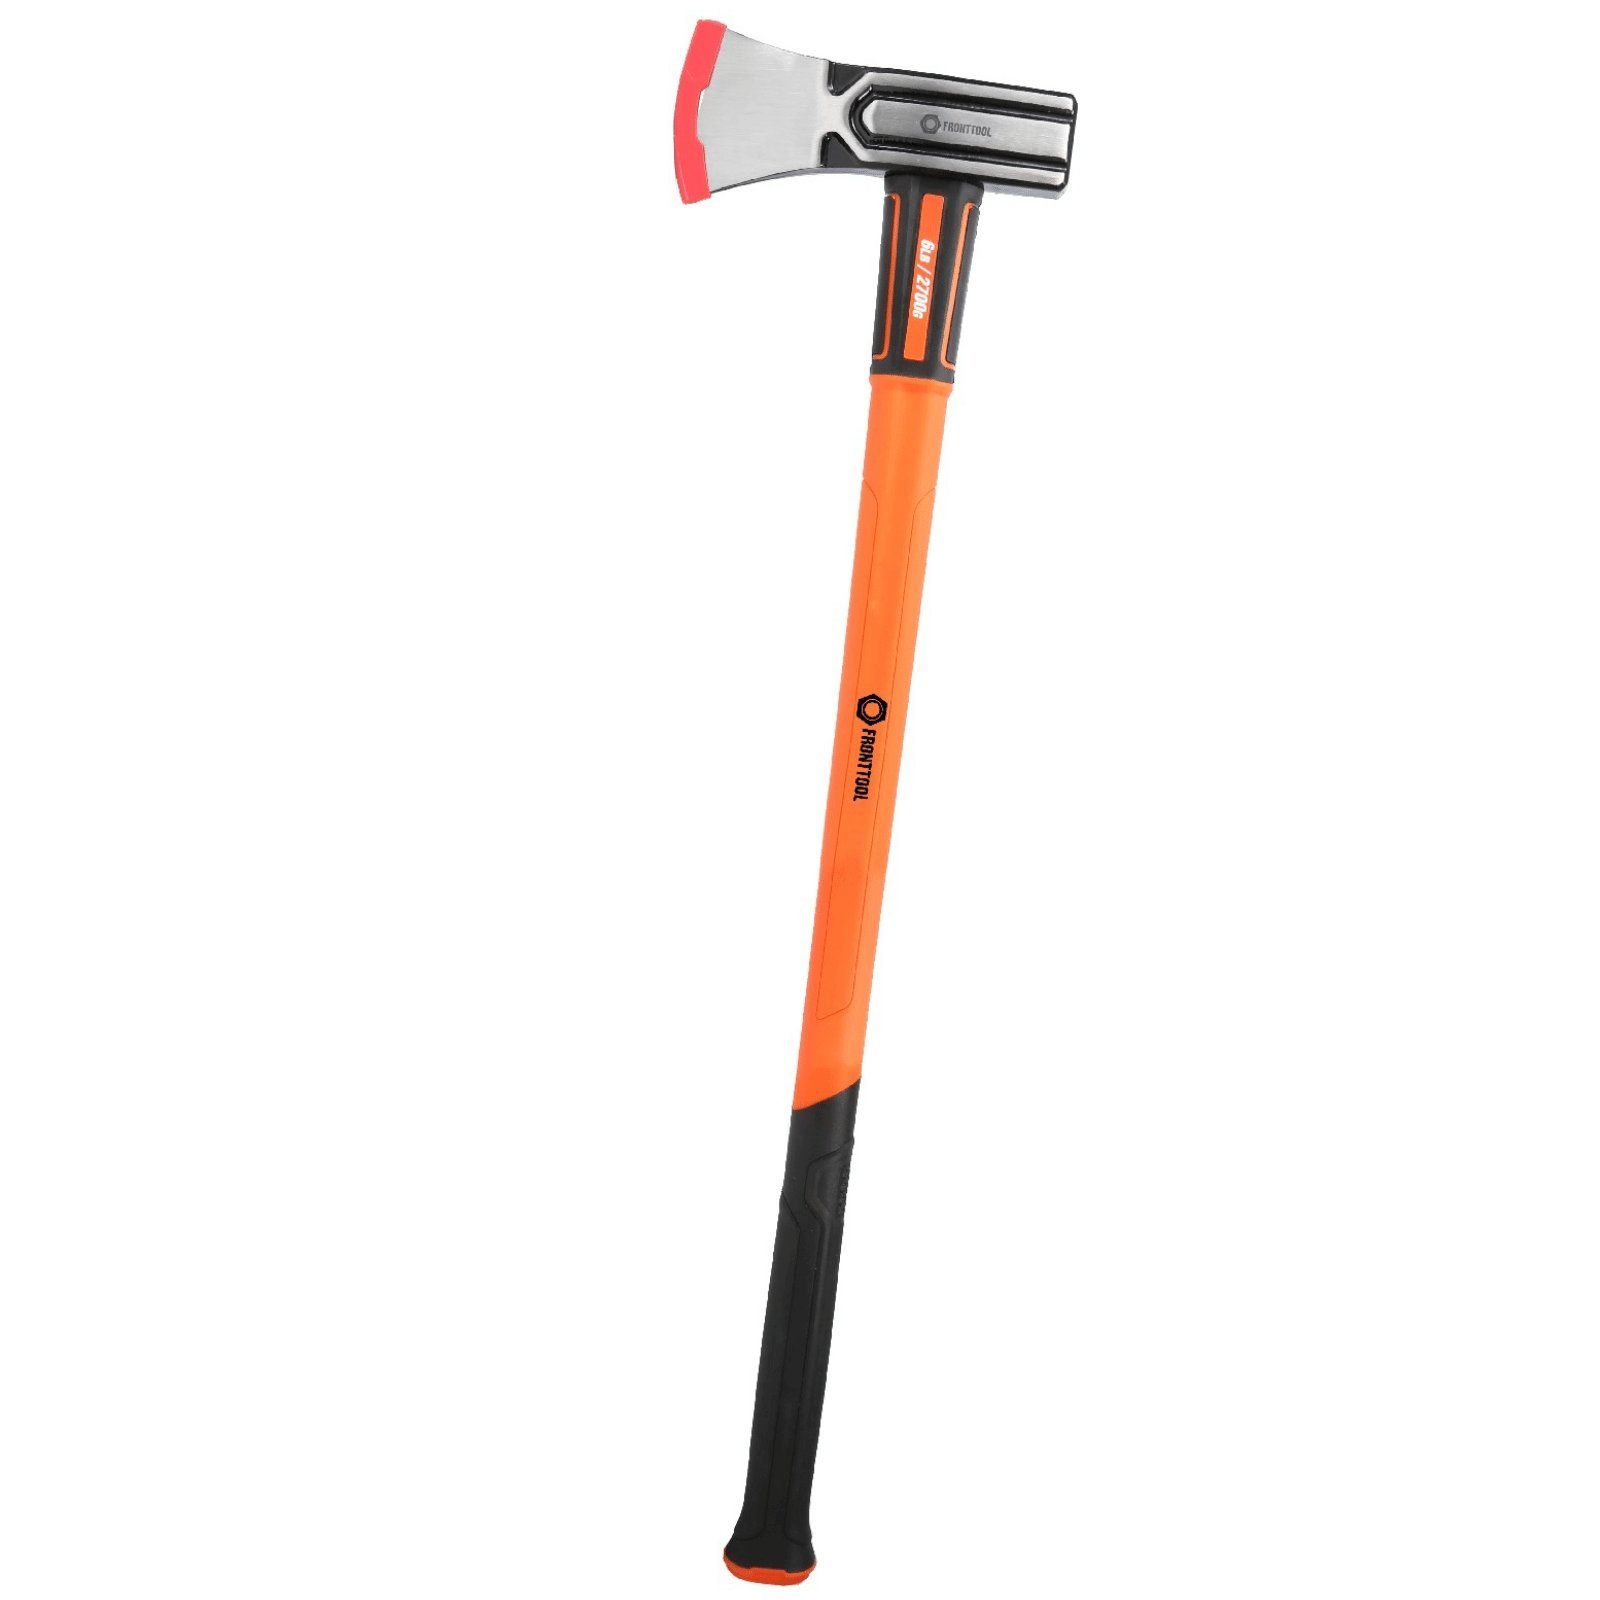 2in1 Vorschlaghammer FRONTTOOL - Hammer 85cm und Spaltaxt Fronttool Spalthammer